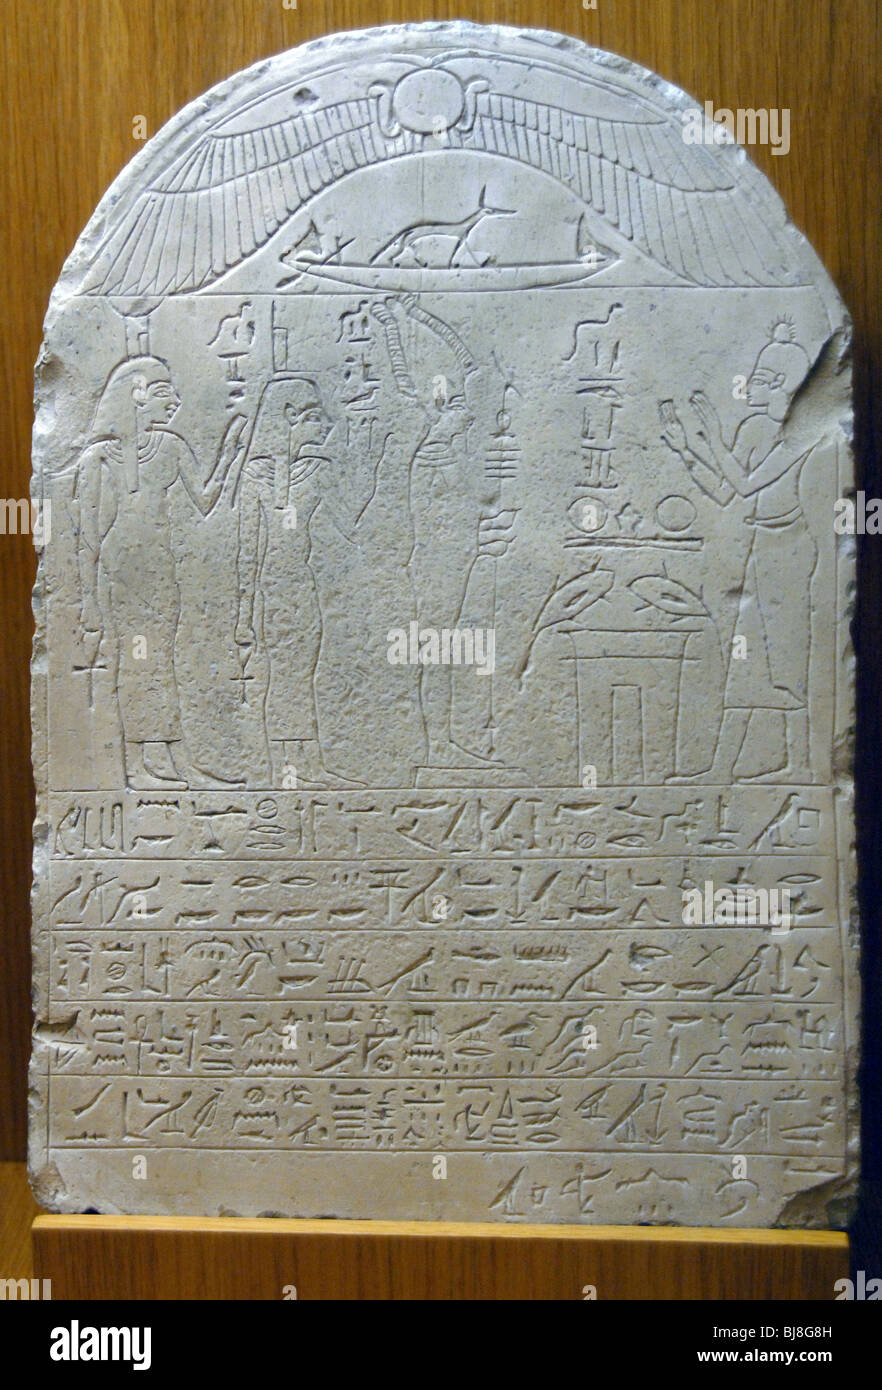 L'art égyptien période tardive. Stèle funéraire avec l'inscription. Musée des beaux-arts de Budapest. La Hongrie. Banque D'Images